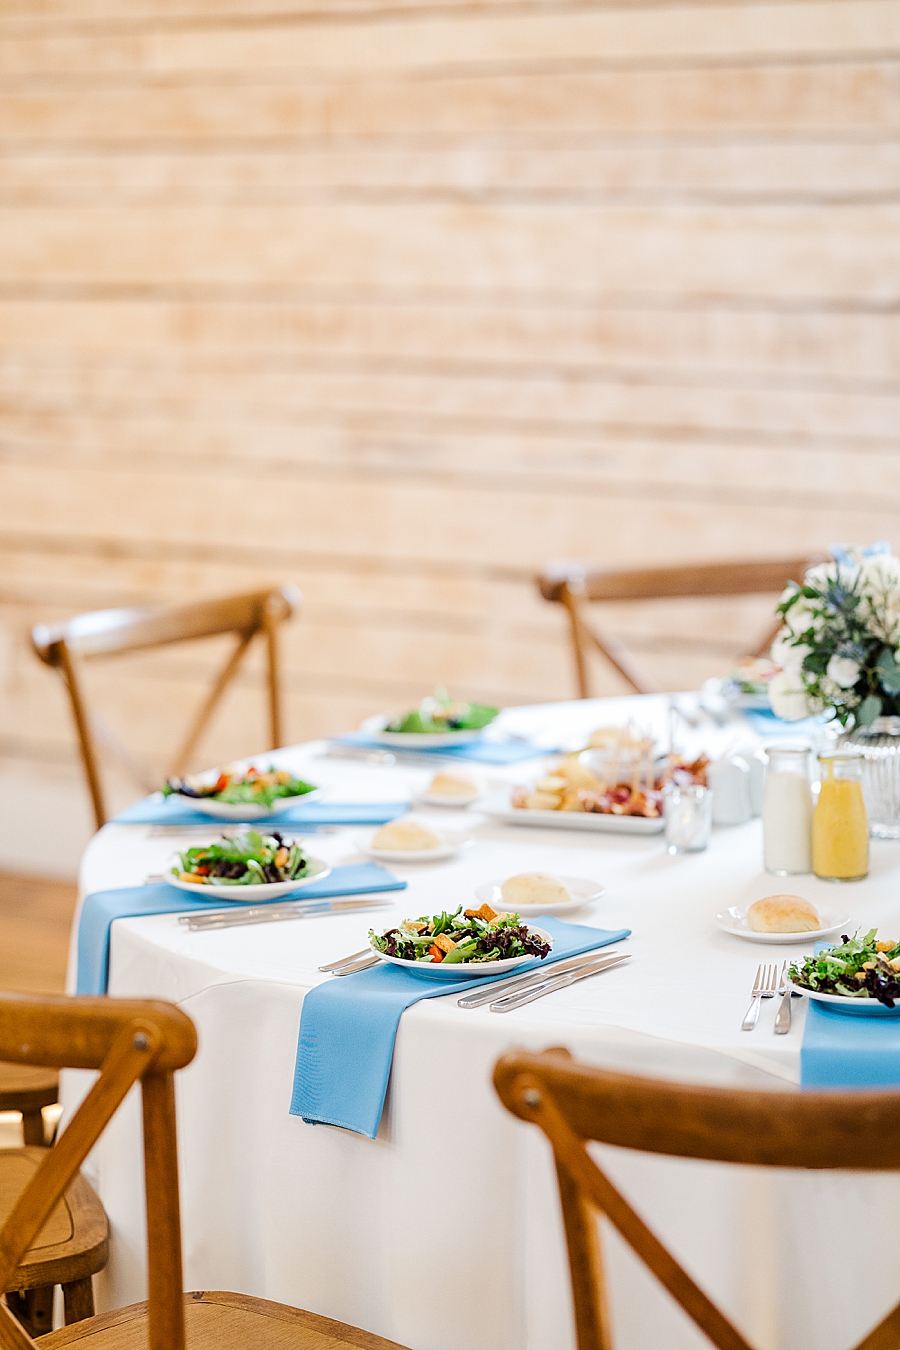 Table setting at wedding by Amanda May Photos